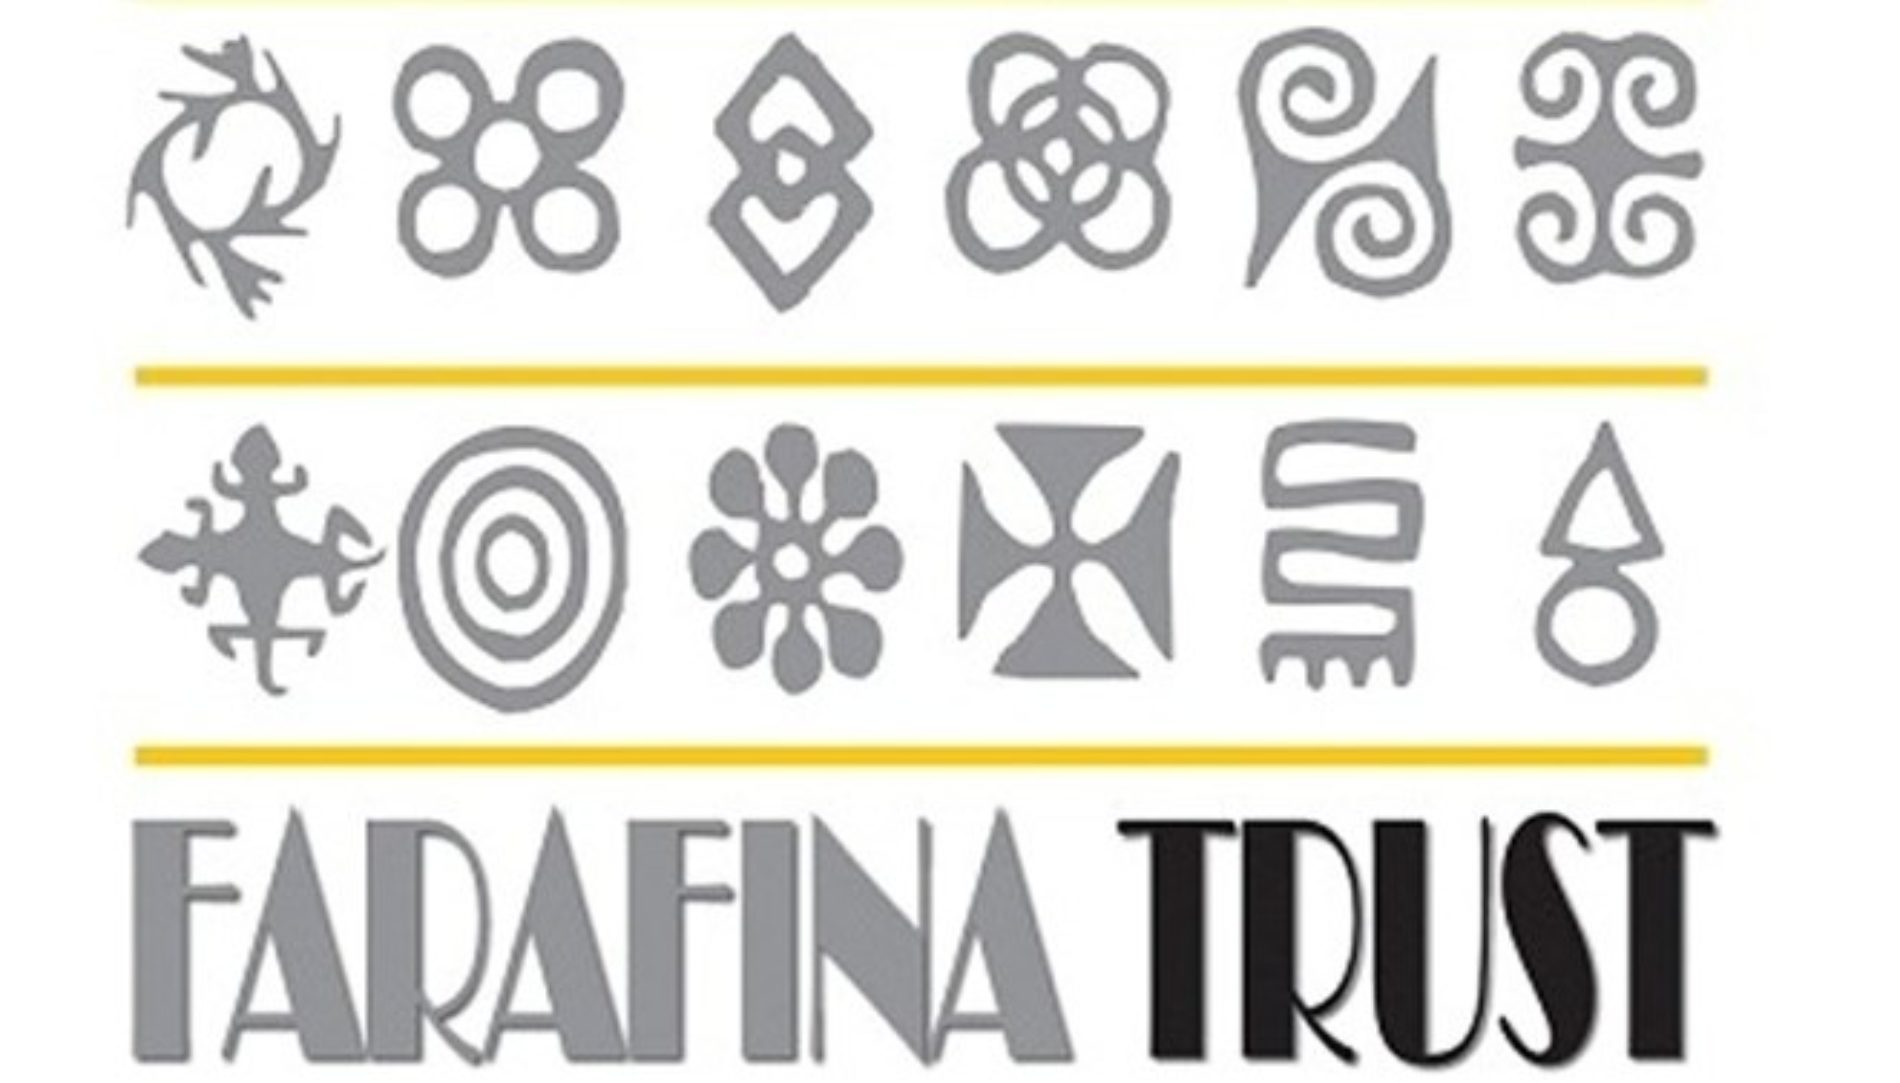 Farafina Trust Creative Writing Workshop 2015 Is Here